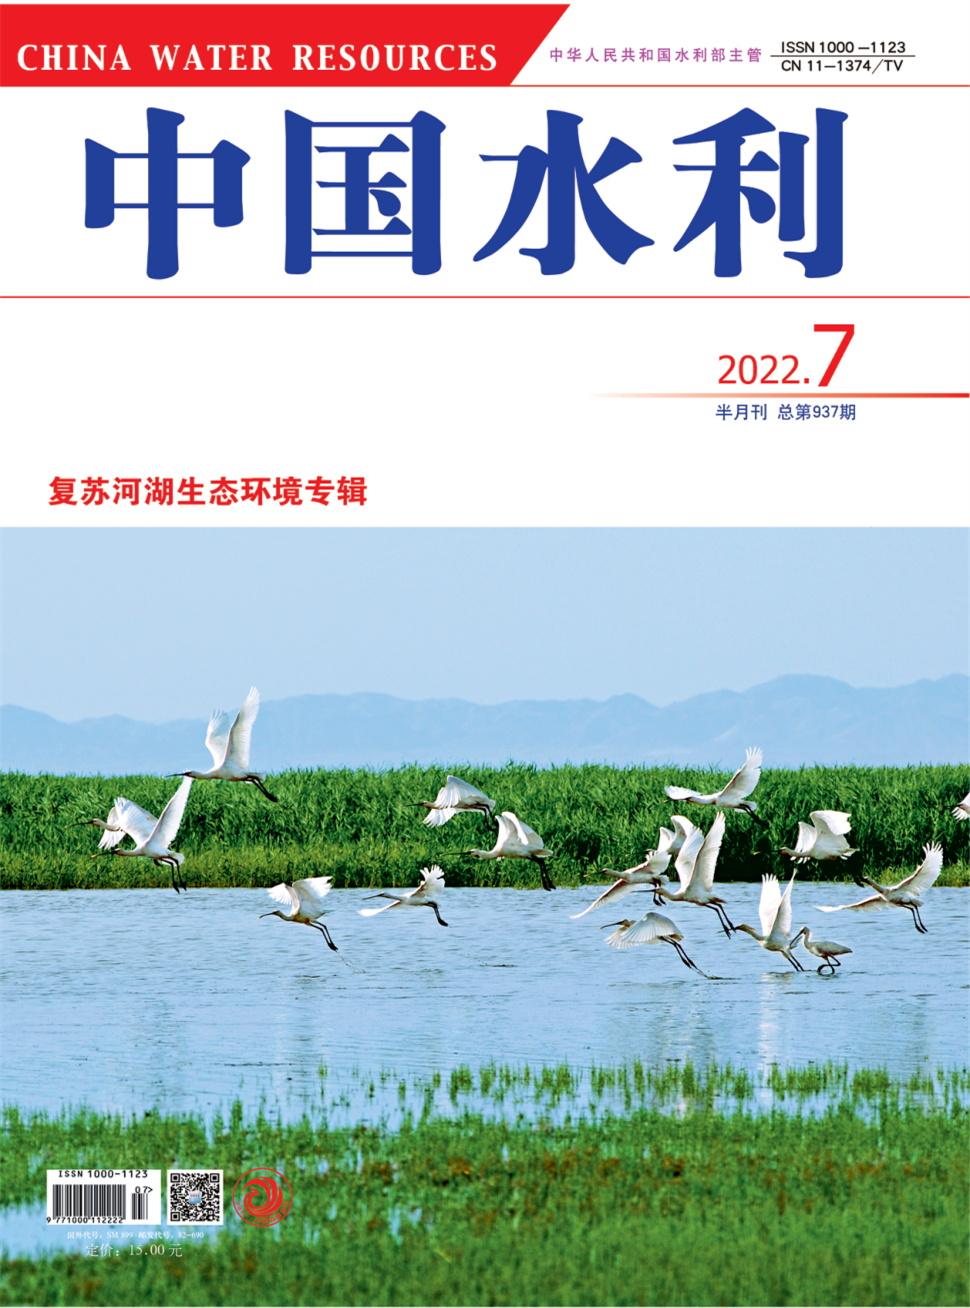 中国水利杂志